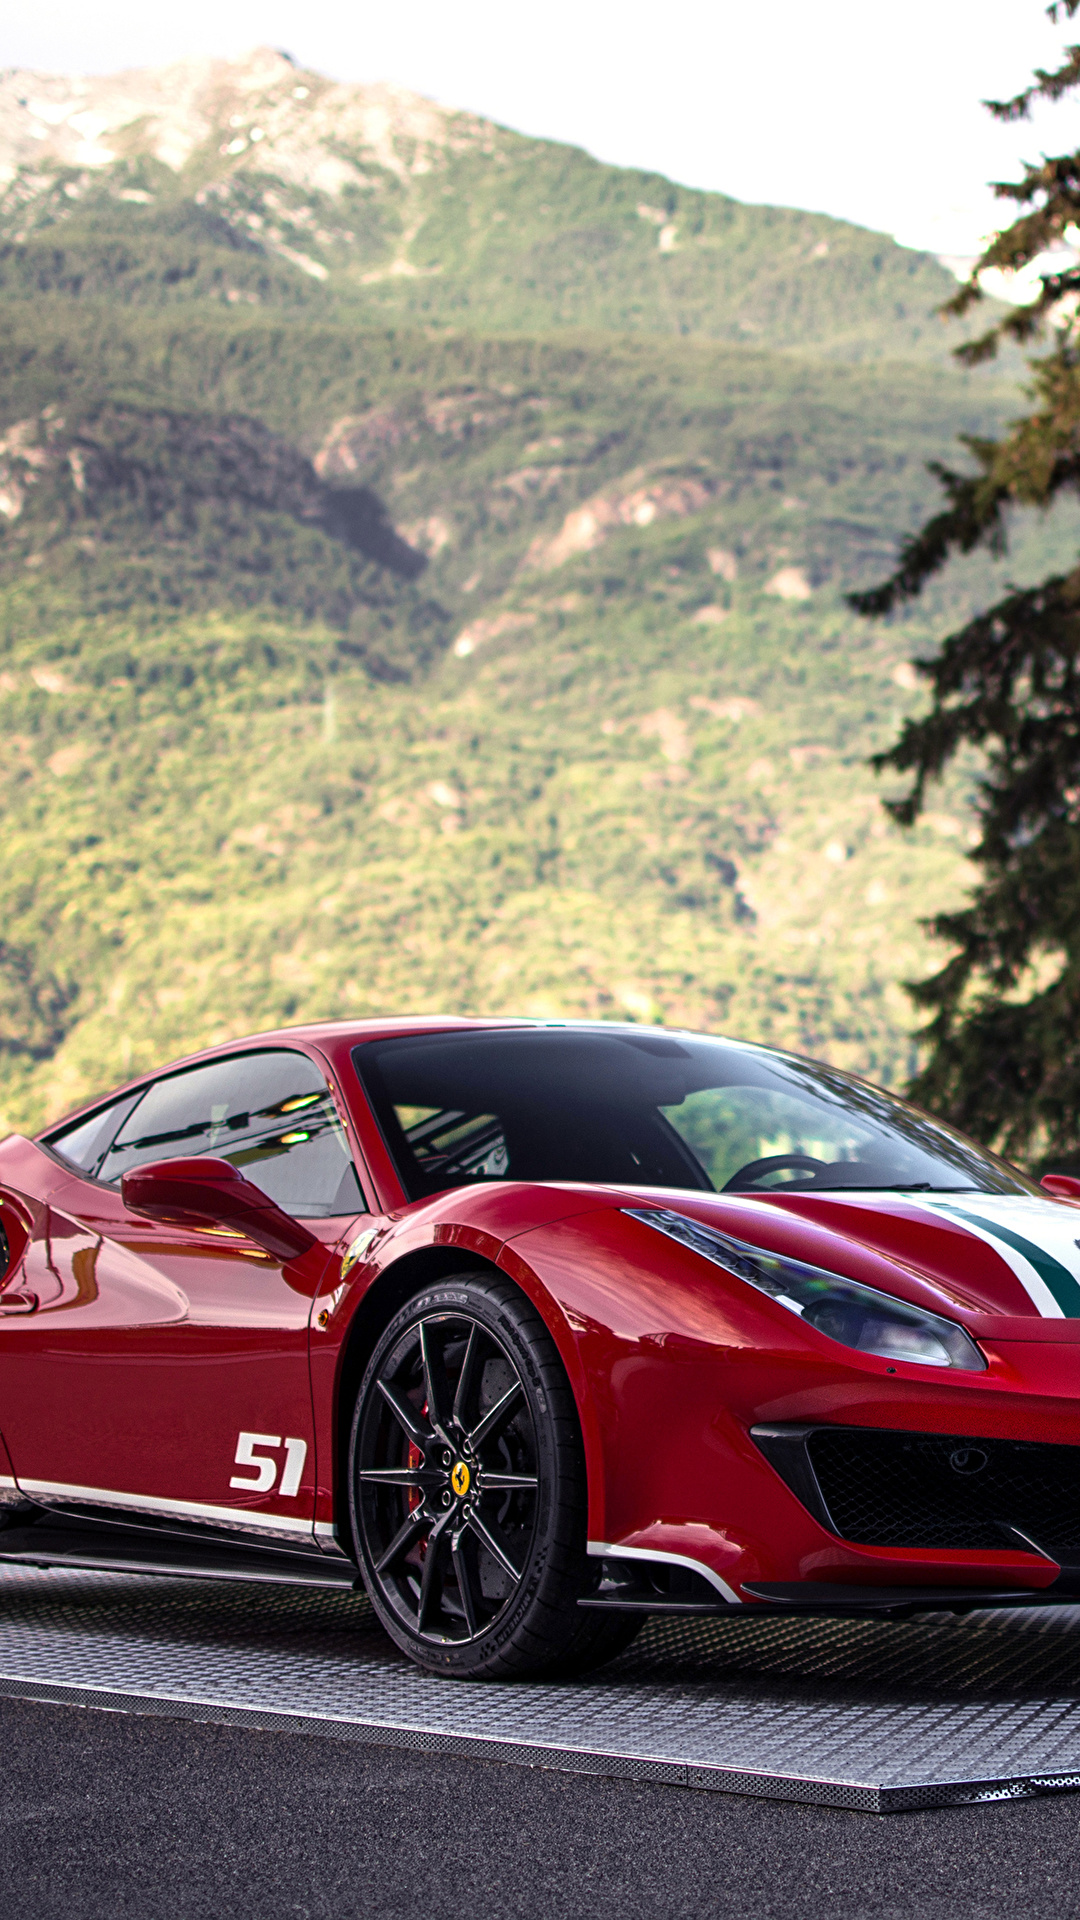 Pictures Tuning 2018 488 Pista Tailor Made Piloti Ferrari